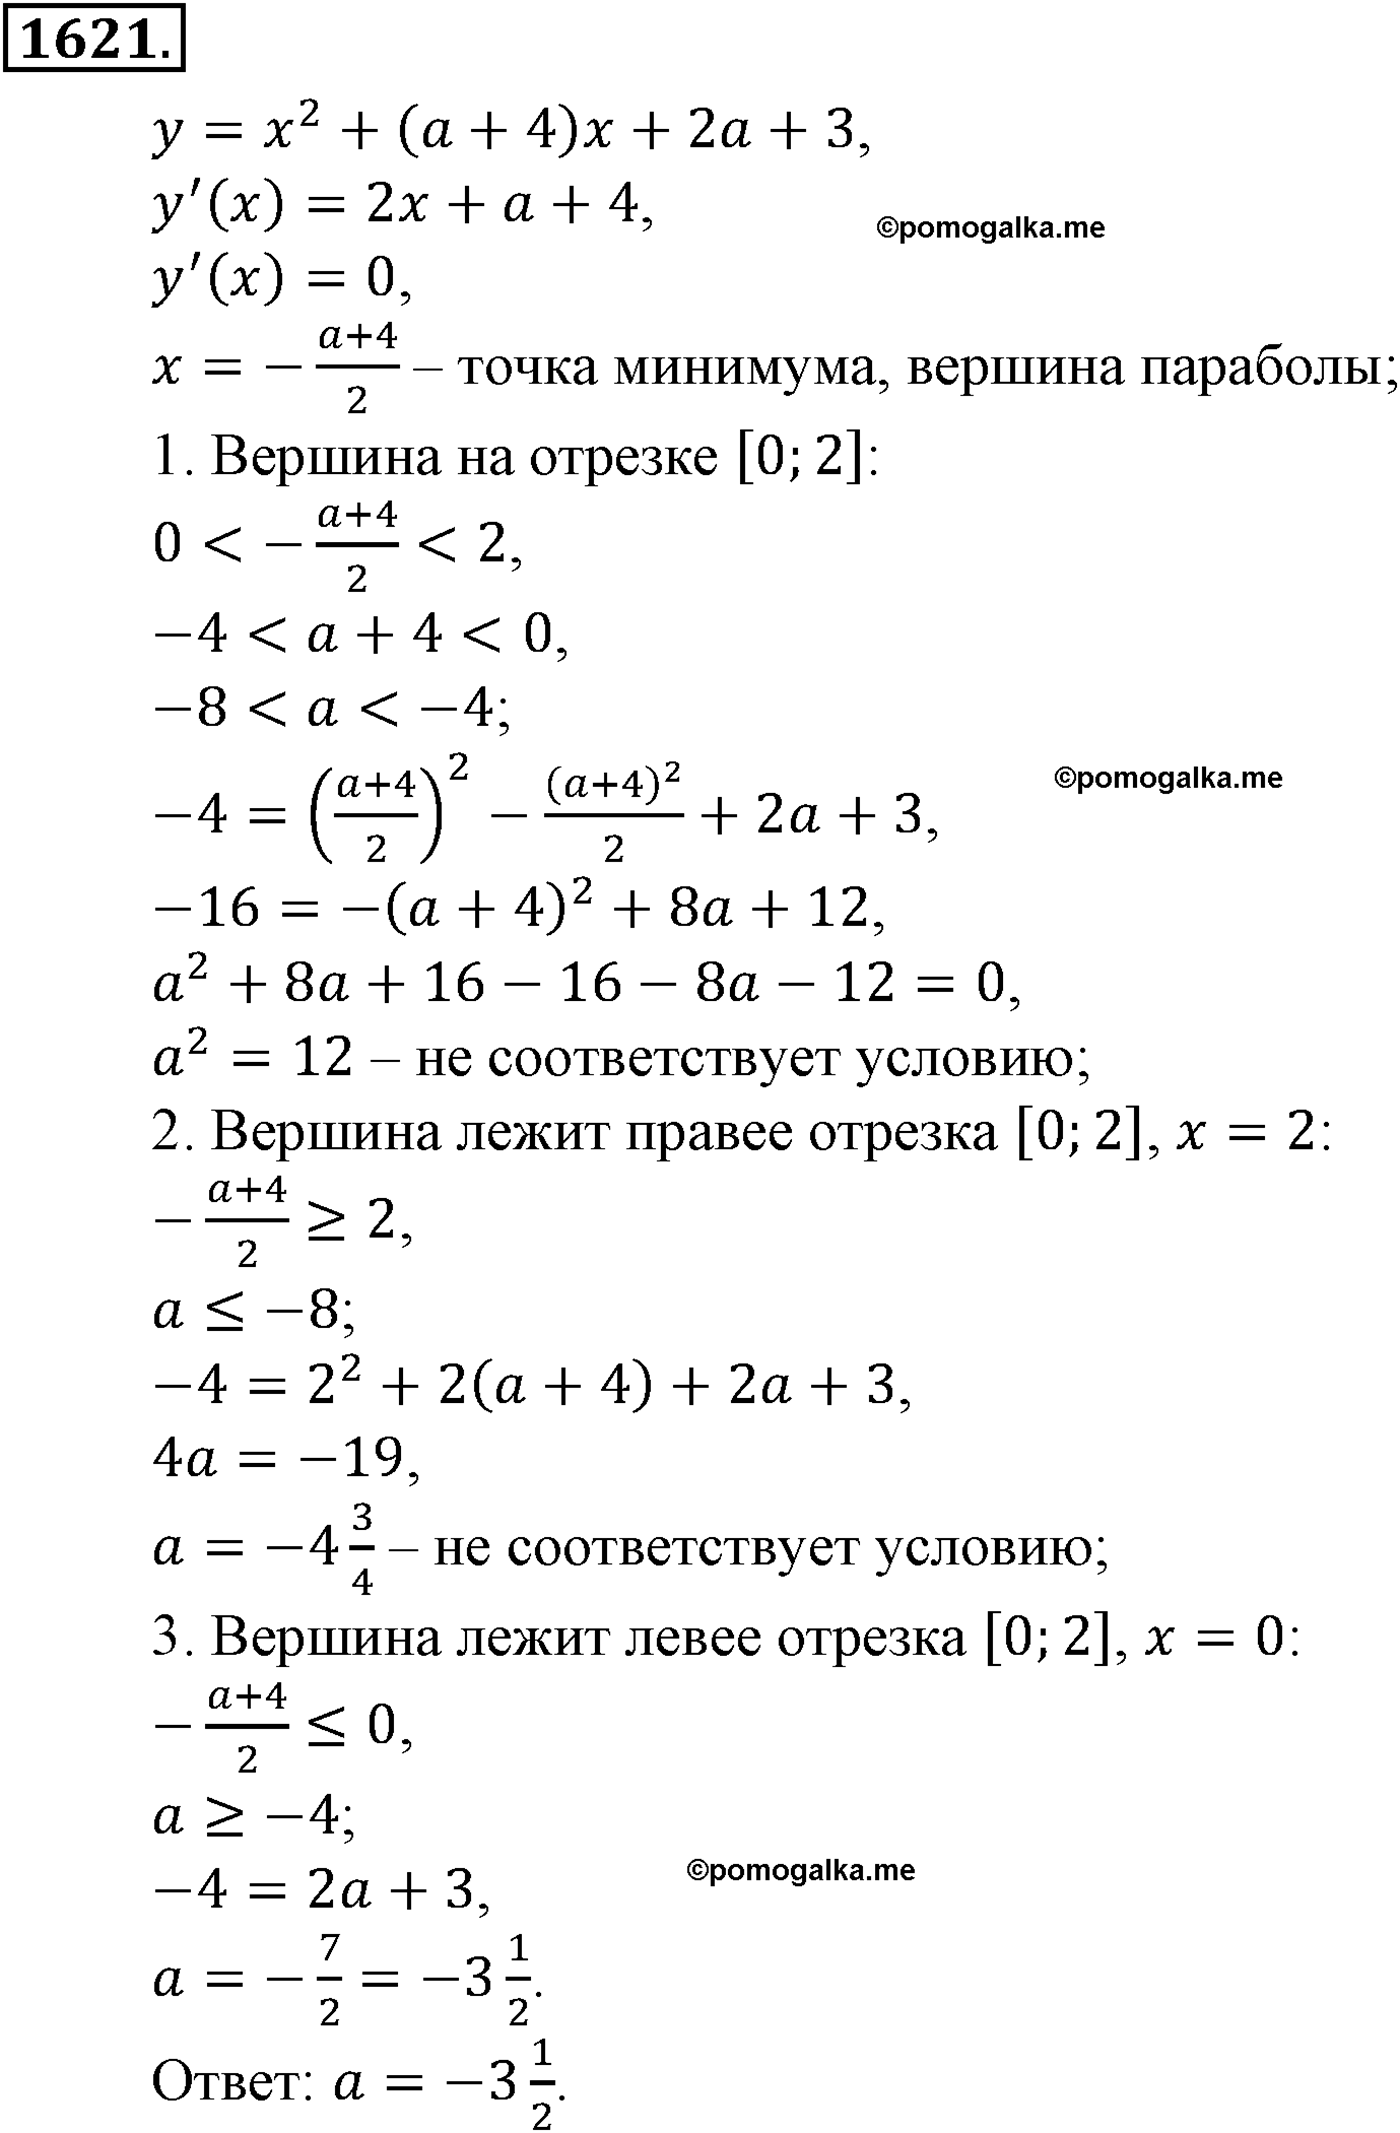 разбор задачи №1621 по алгебре за 10-11 класс из учебника Алимова, Колягина